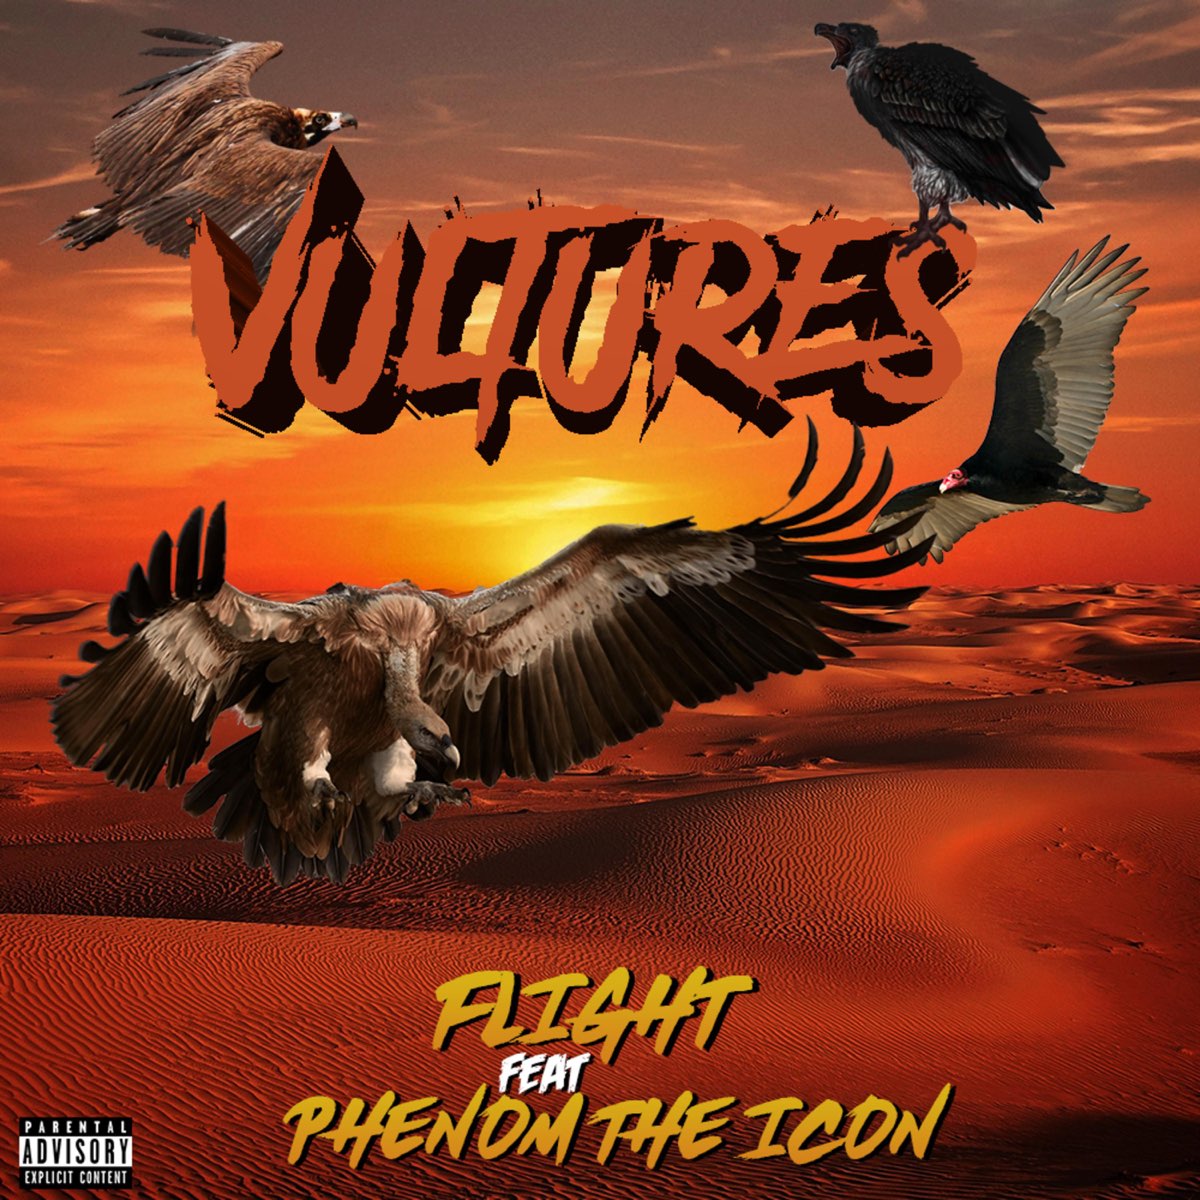 Vultures album